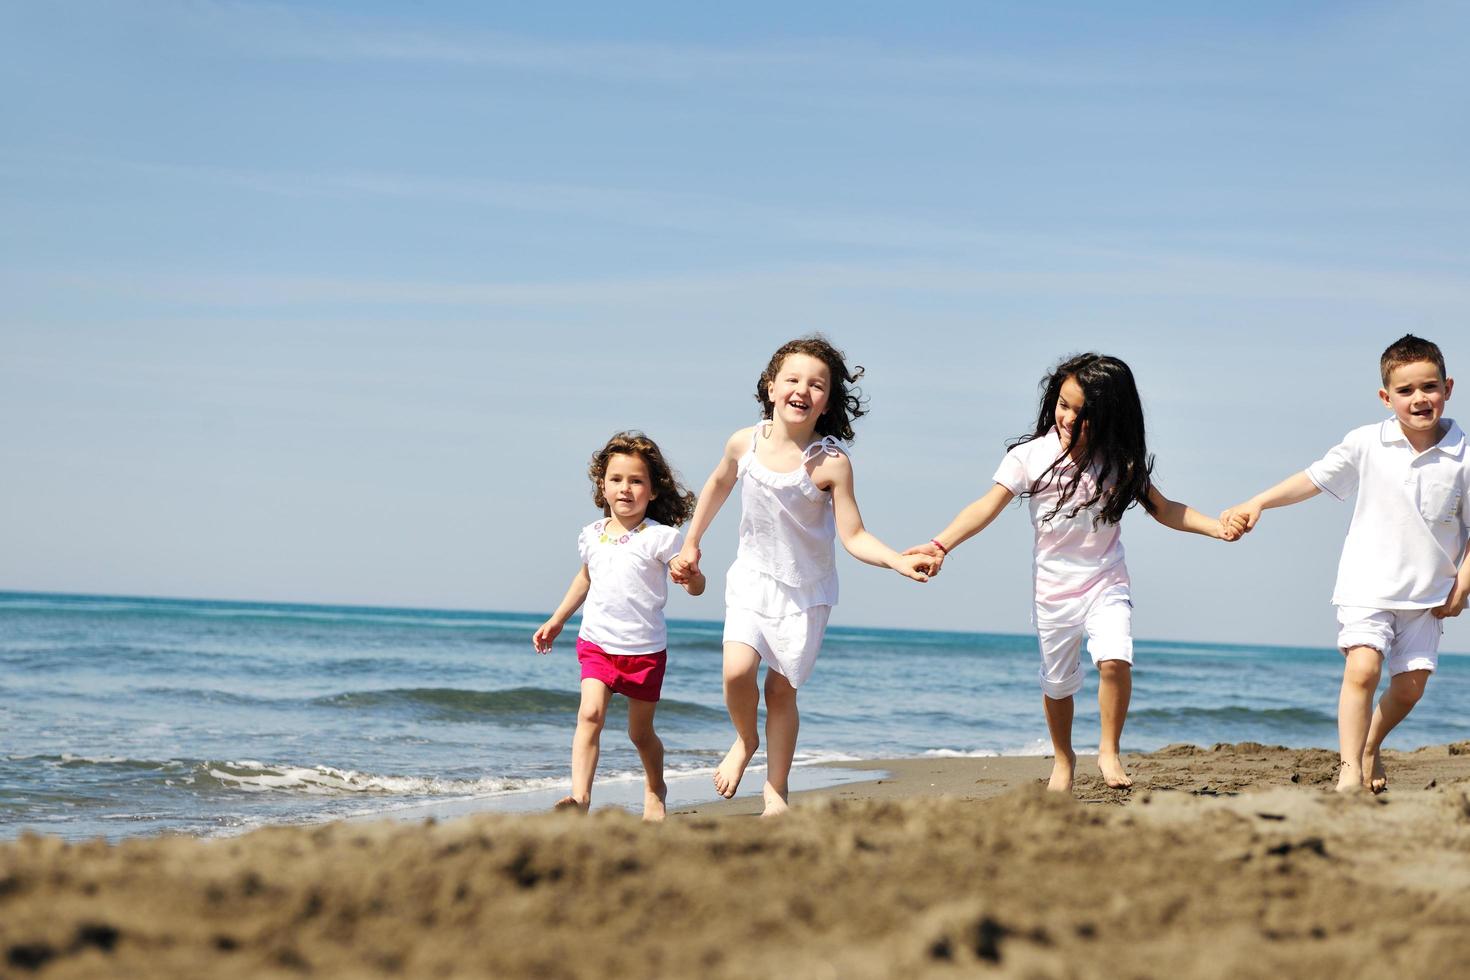 groupe d'enfants heureux jouant sur la plage photo